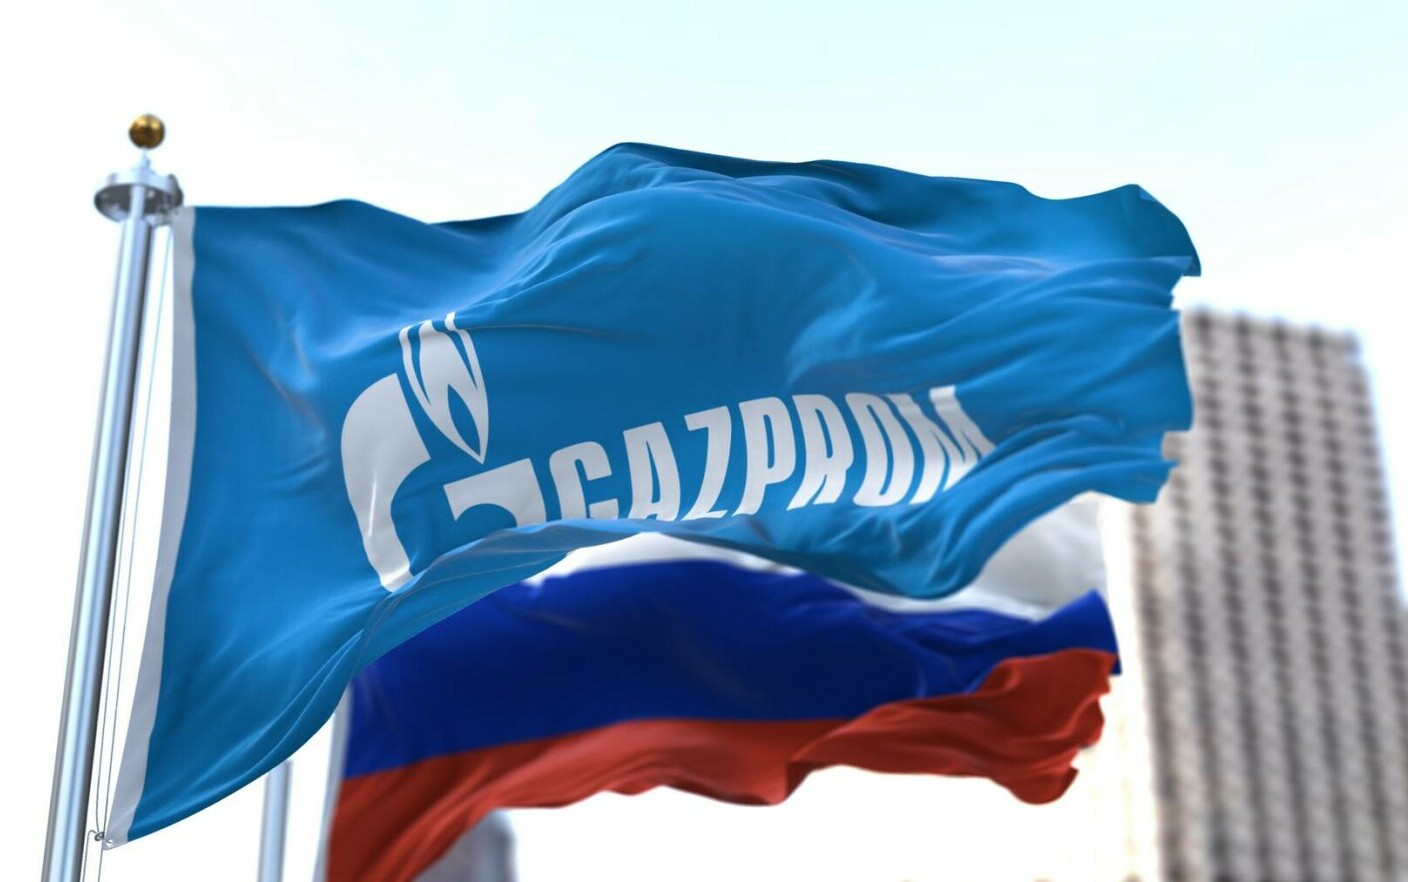 Gazprom obține un profit record în 2022, după ce creșterea prețurilor a compensat scăderea exporturilor